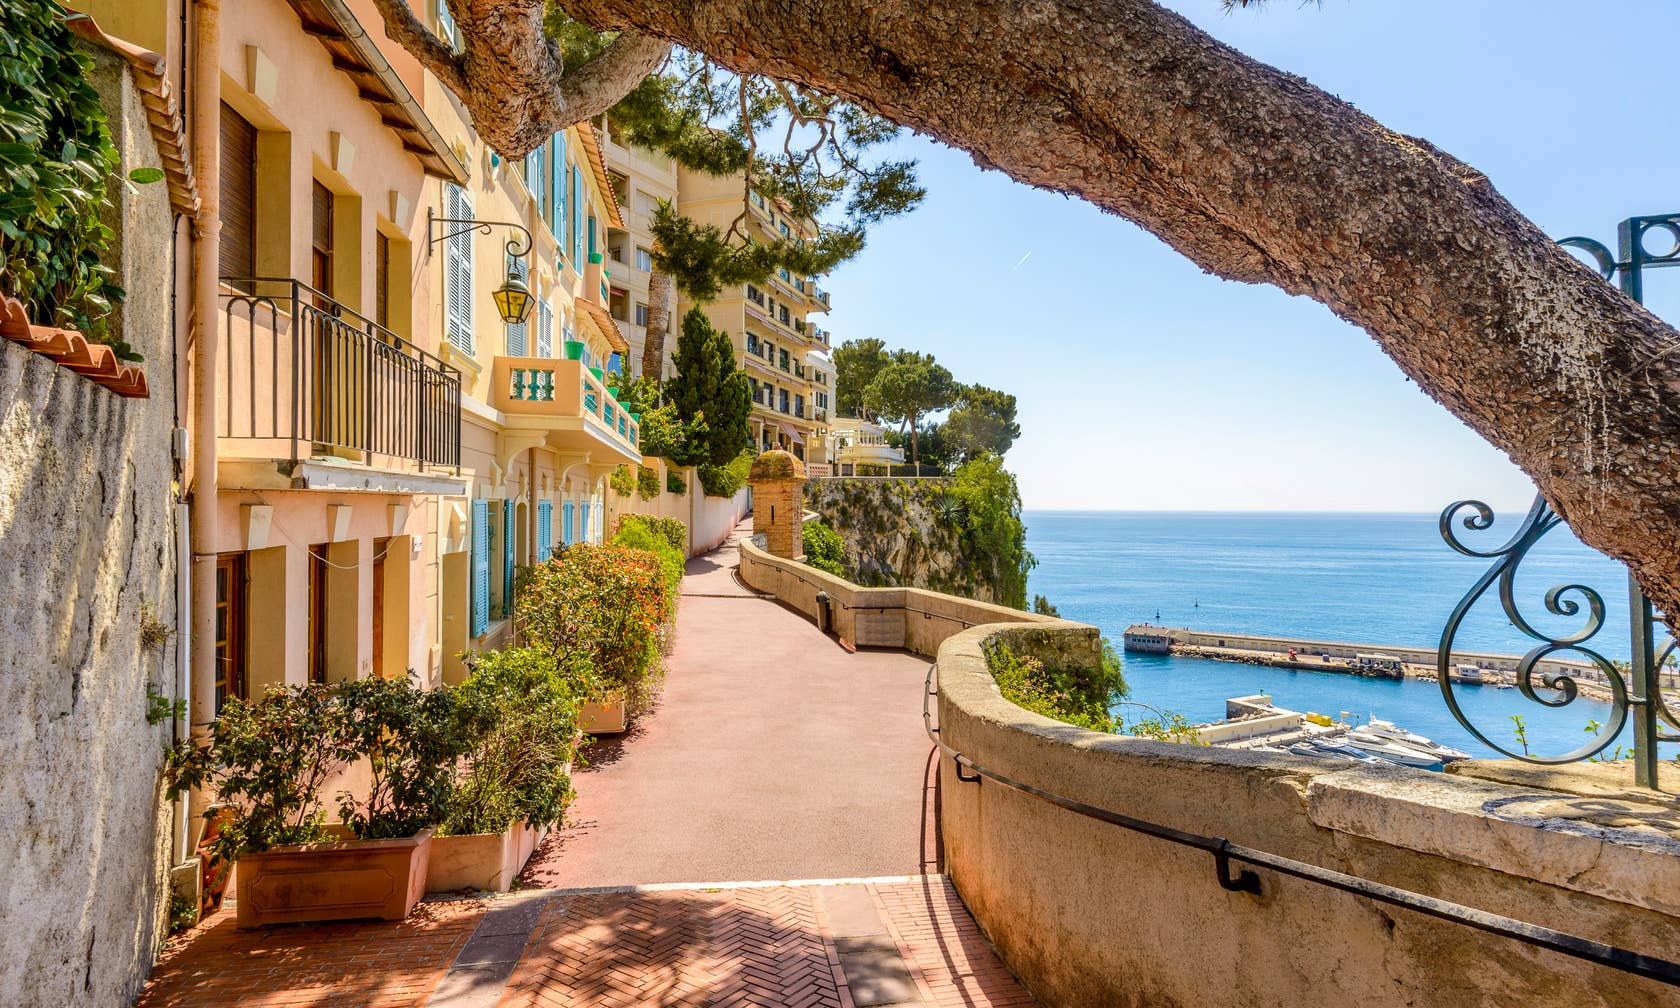 Kirjiet għall-vaganzi ġewwa Monaco